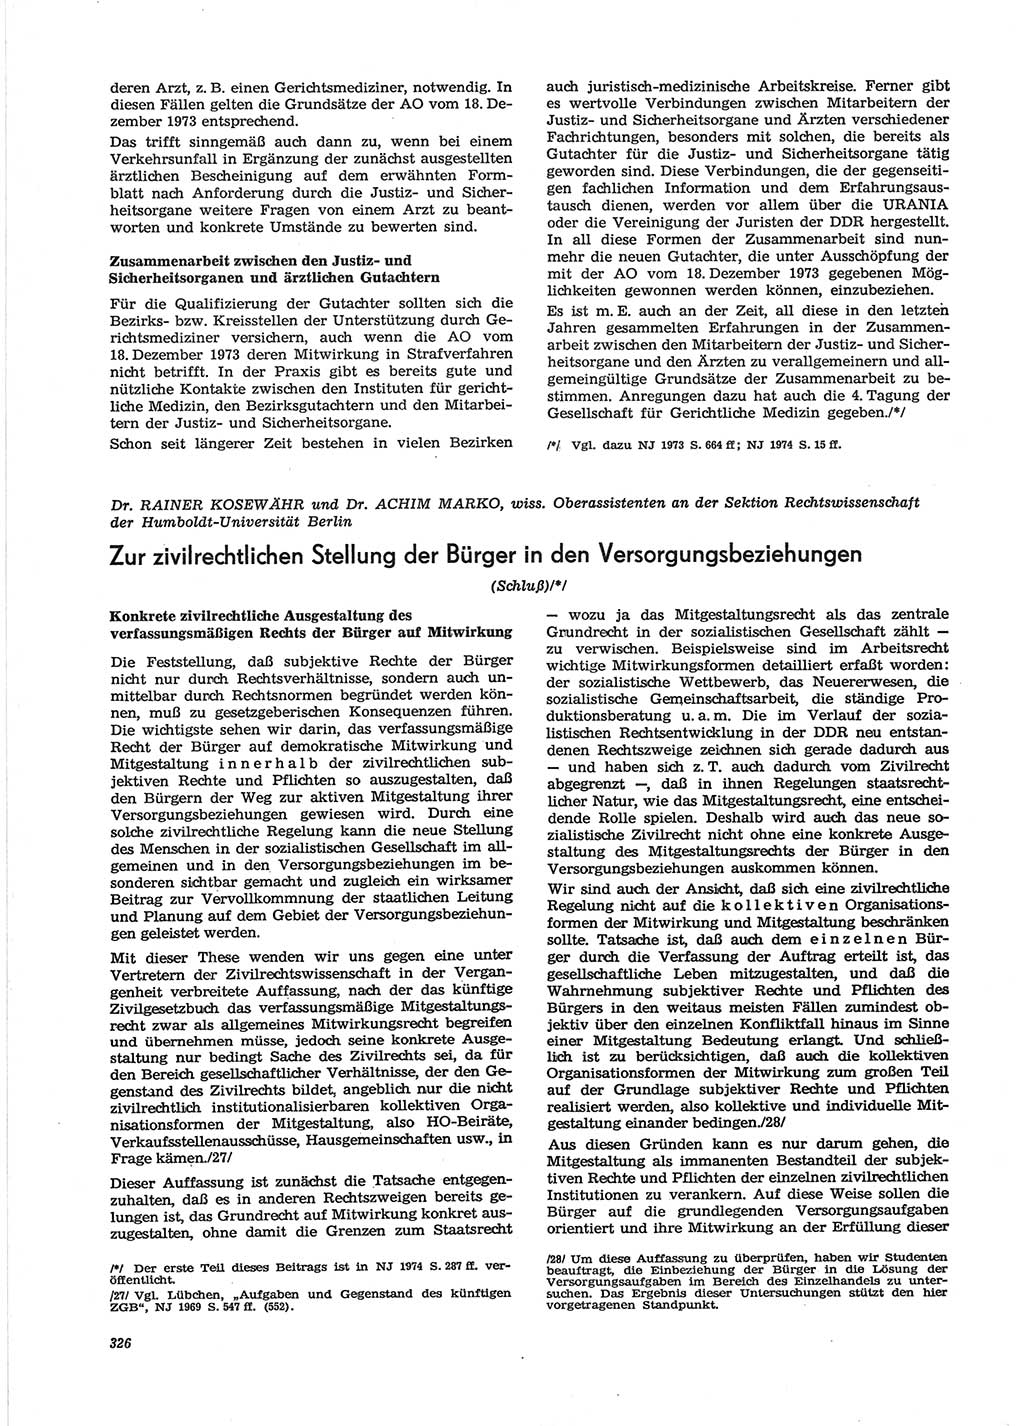 Neue Justiz (NJ), Zeitschrift für Recht und Rechtswissenschaft [Deutsche Demokratische Republik (DDR)], 28. Jahrgang 1974, Seite 326 (NJ DDR 1974, S. 326)